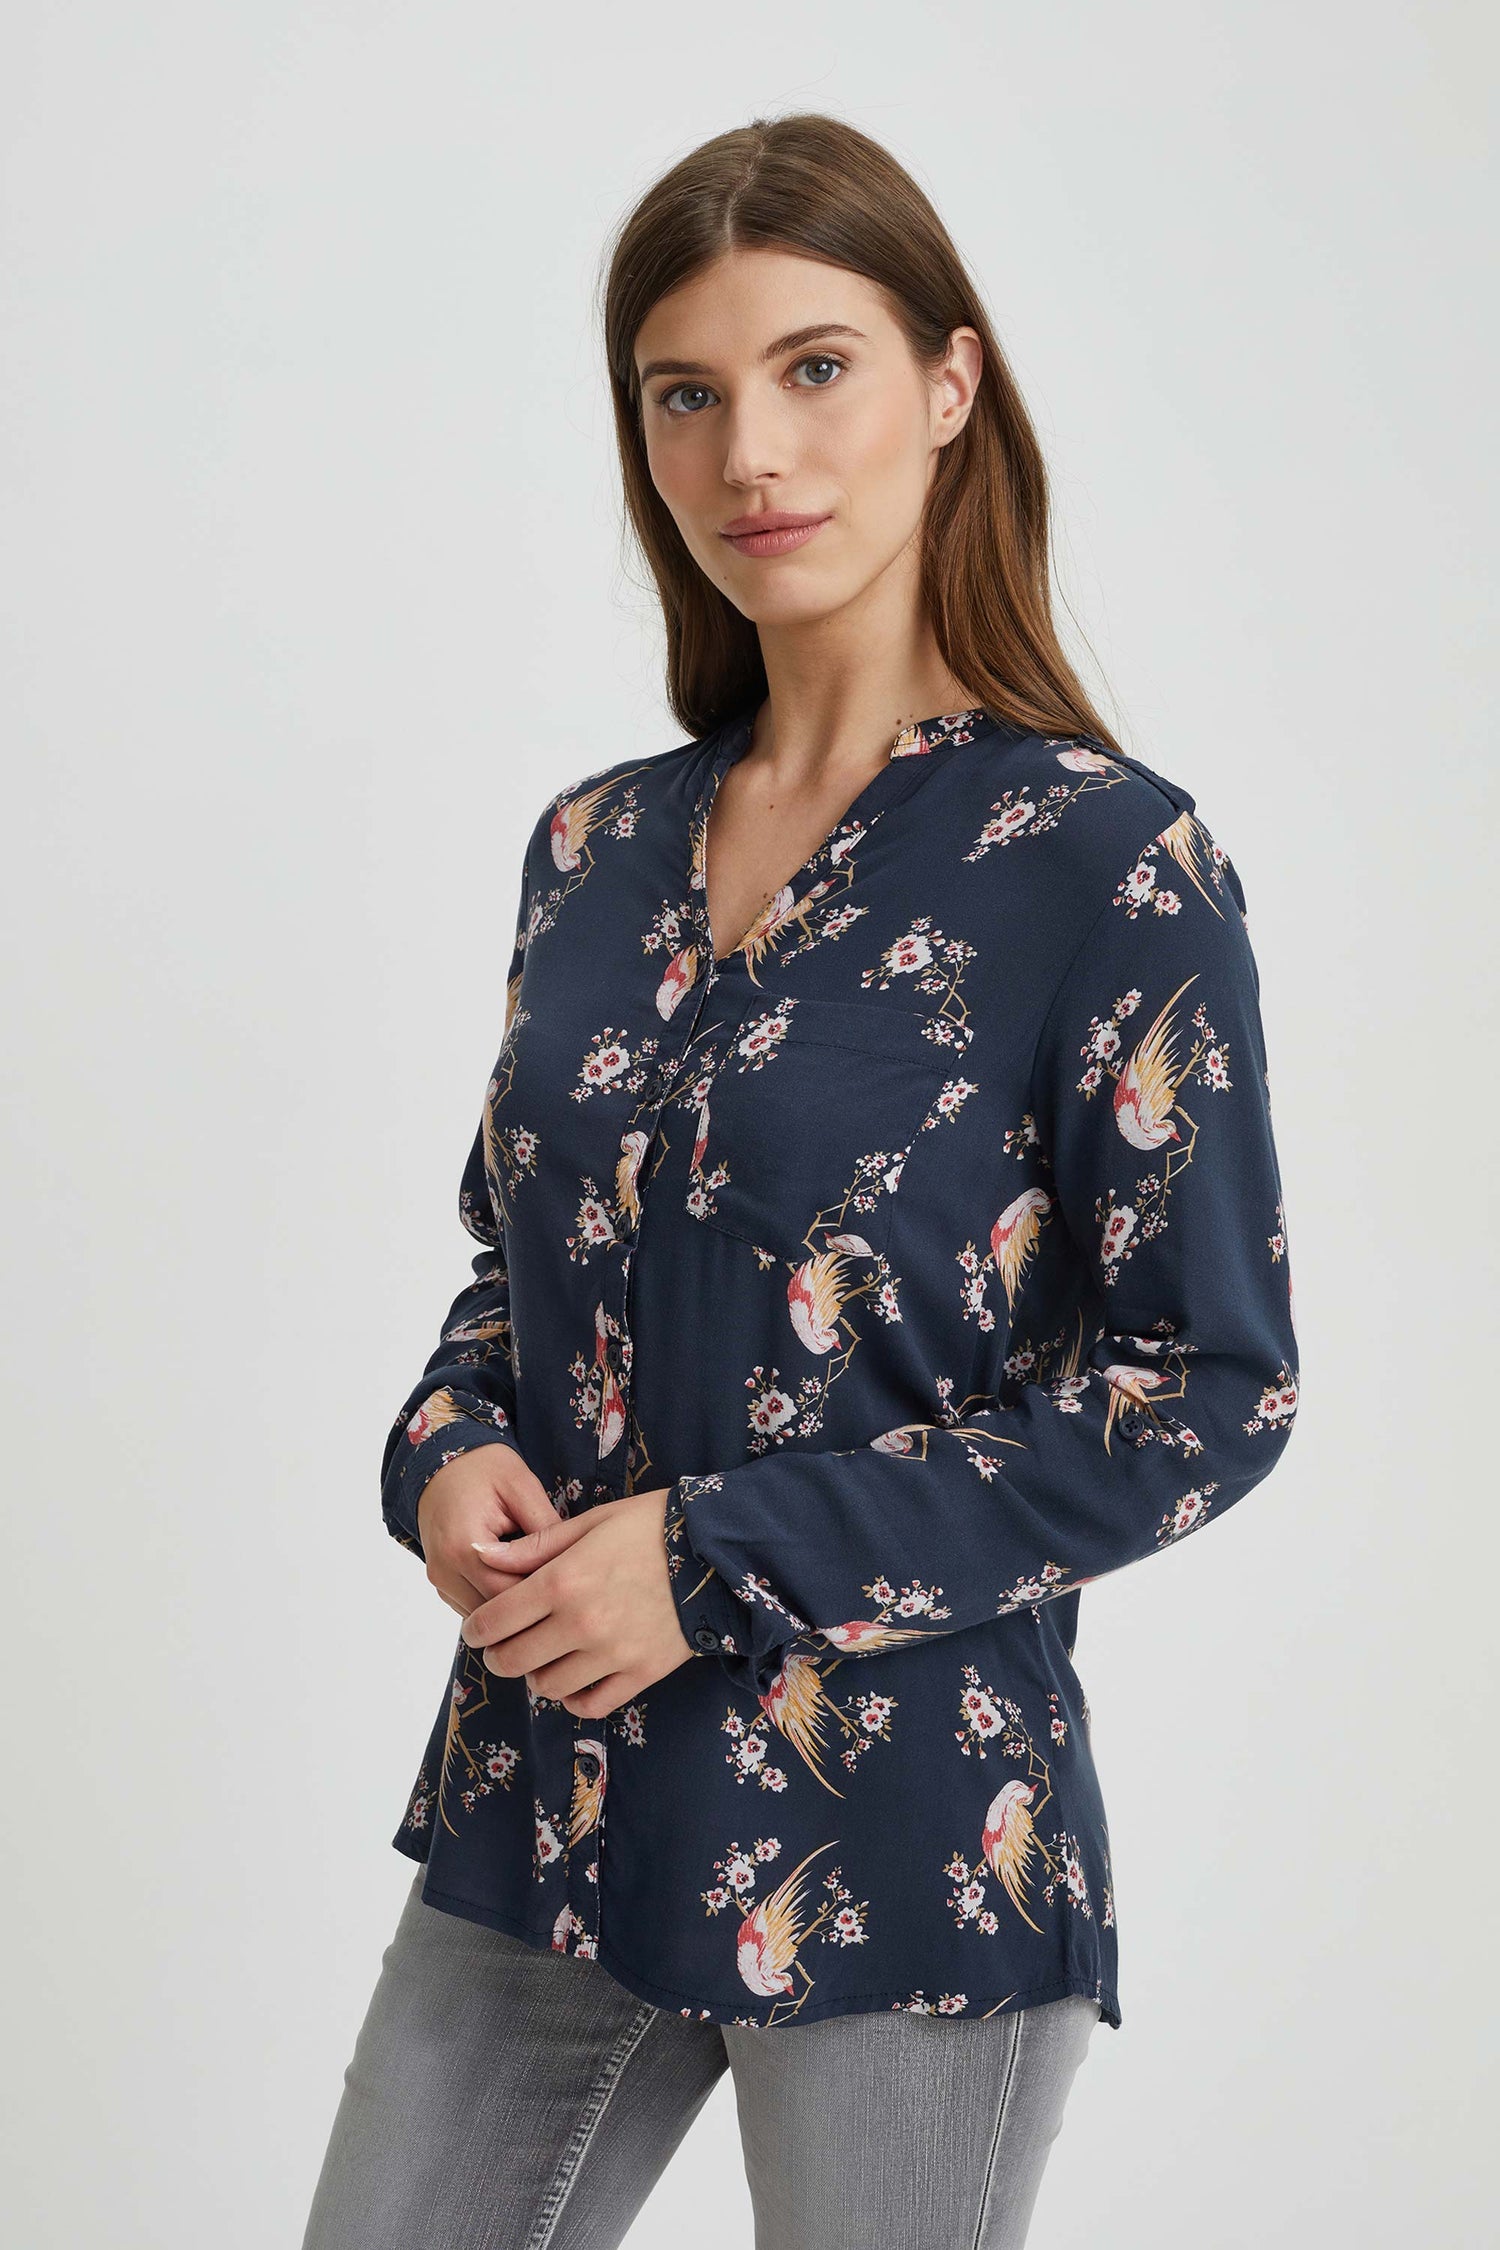 Asymmetrical floral print blouse